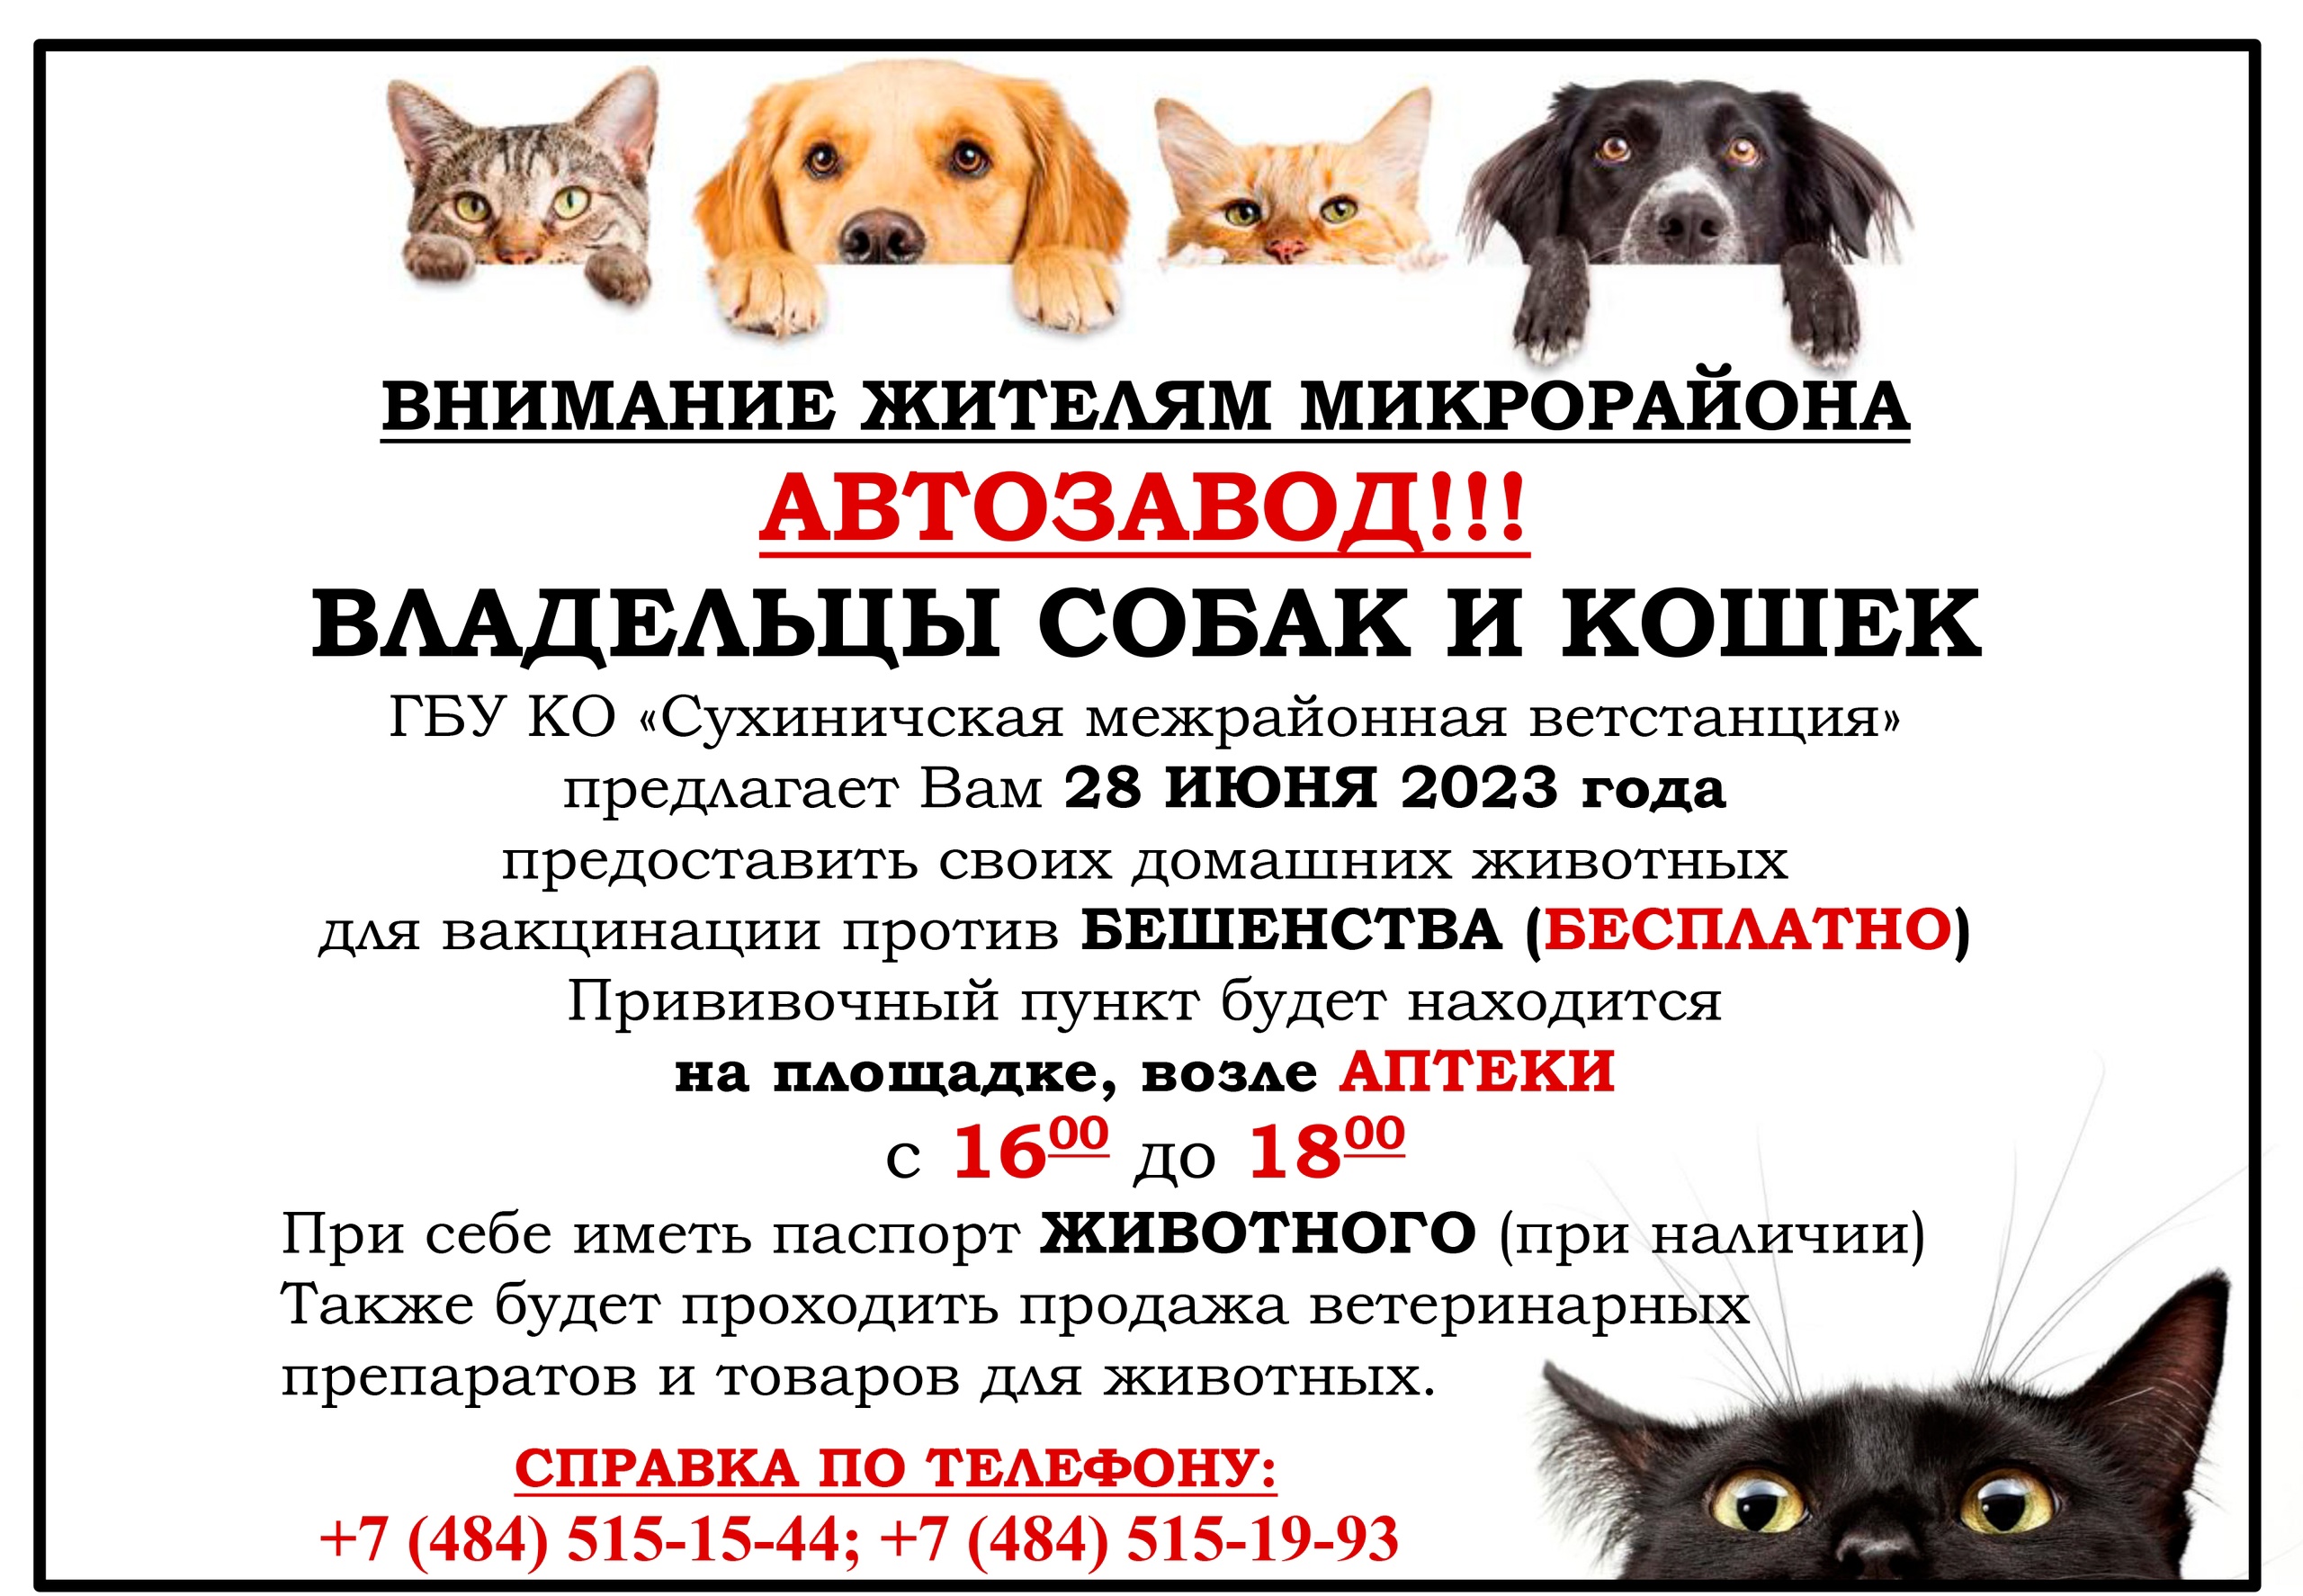 Бесплатные прививки для кошек в москве. Пункт вакцинации животных. Всемирный день бешенства 28 сентября. Зачем нужно вакцинировать кошек и собак.